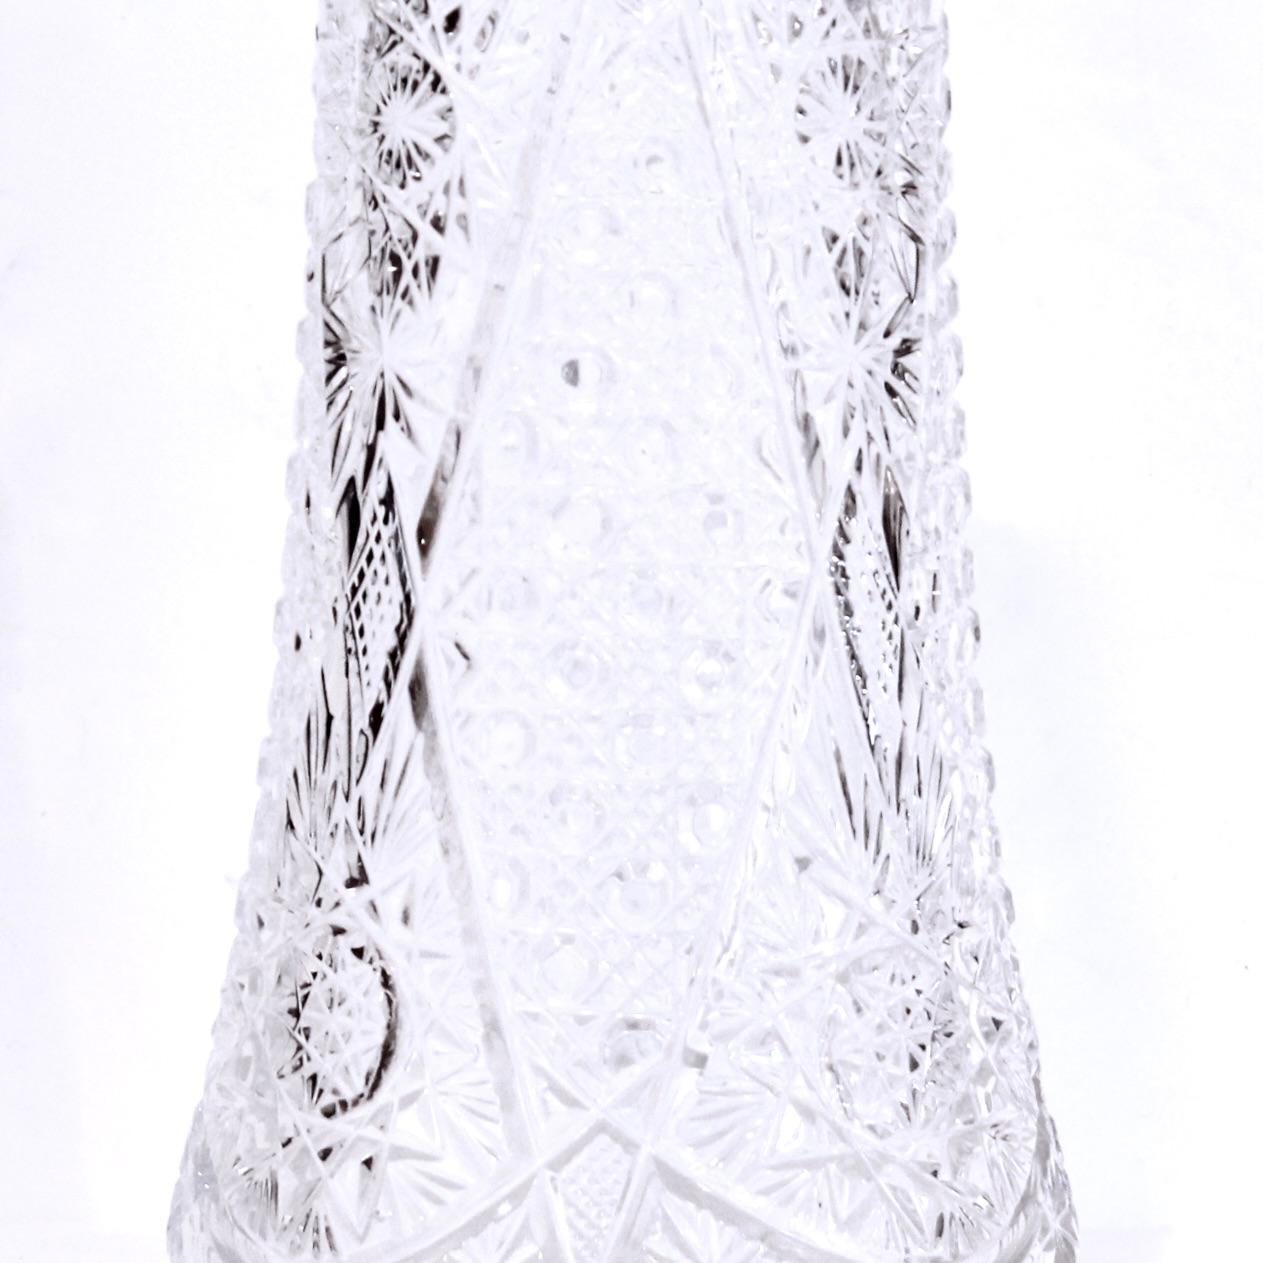 Un joli vase à fleurs en verre facetté de bonnes dimensions, décoré d'un bord en dents de scie, sous lequel se déploient des motifs complexes de tourbillons et d'étoiles, ainsi que d'intéressants motifs de facettes plates et de bosses. Deuxième